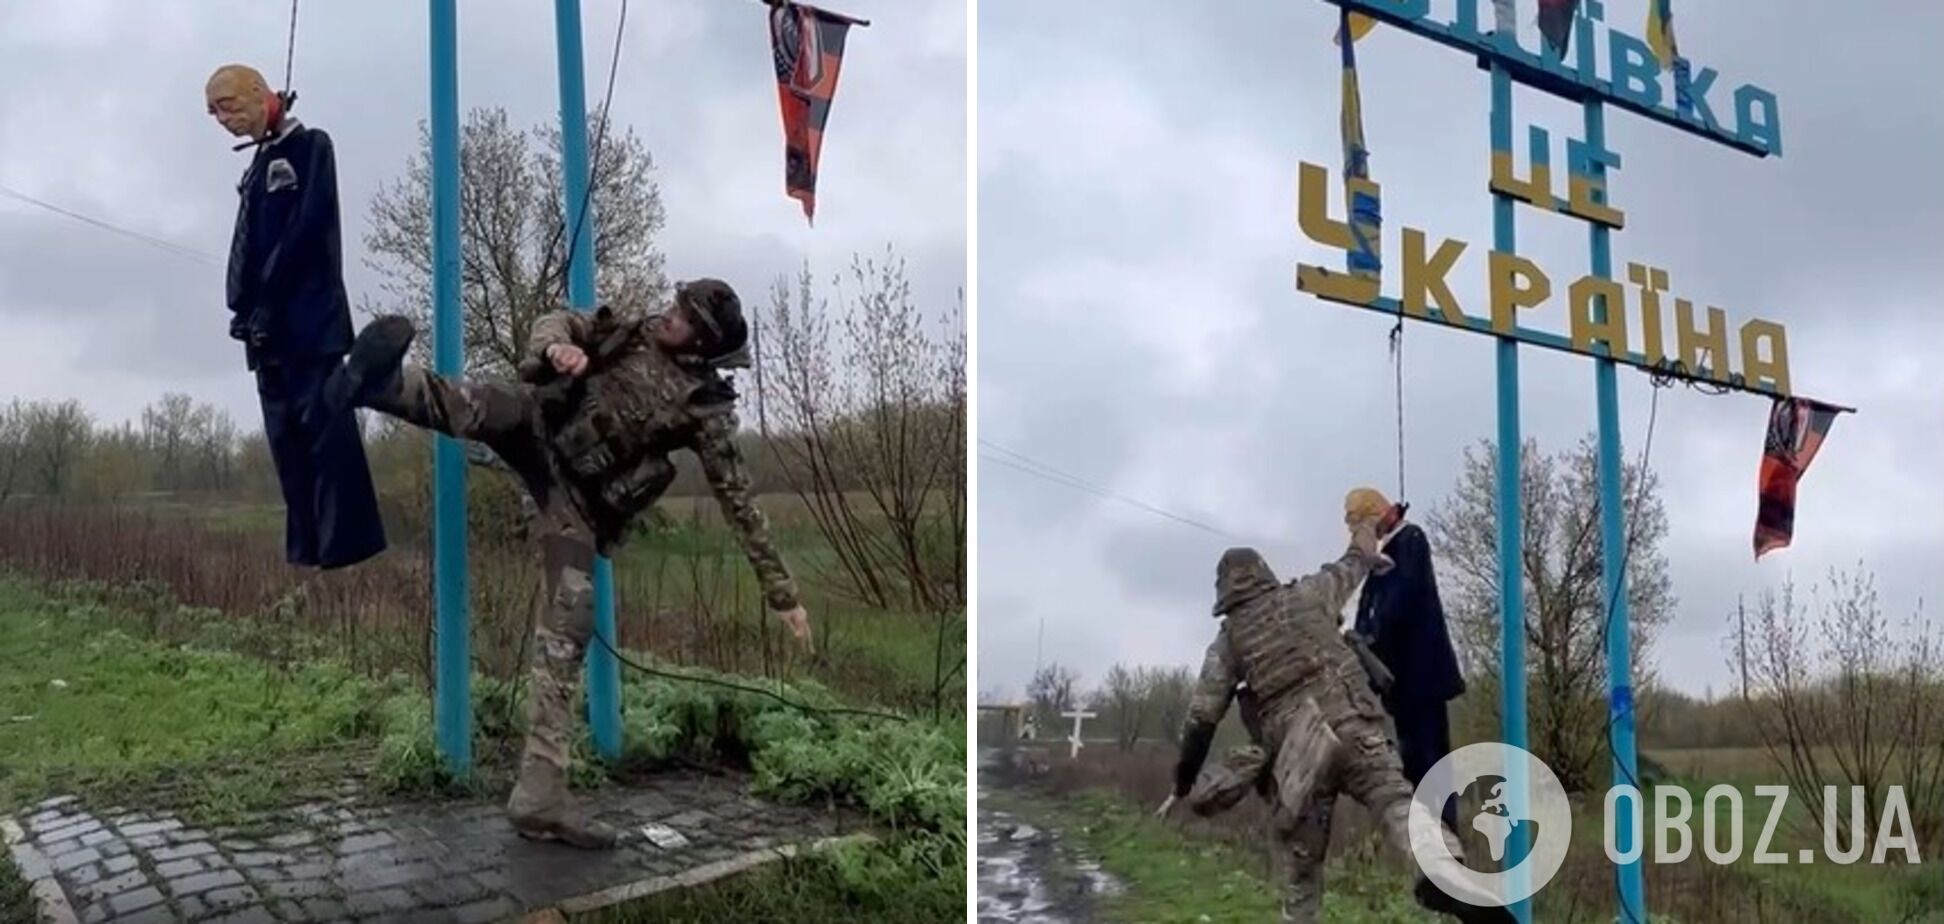 'У кожного своя груша': під Авдіївкою воїн ЗСУ показав навики бойового мистецтва на опудалі Путіна. Відео